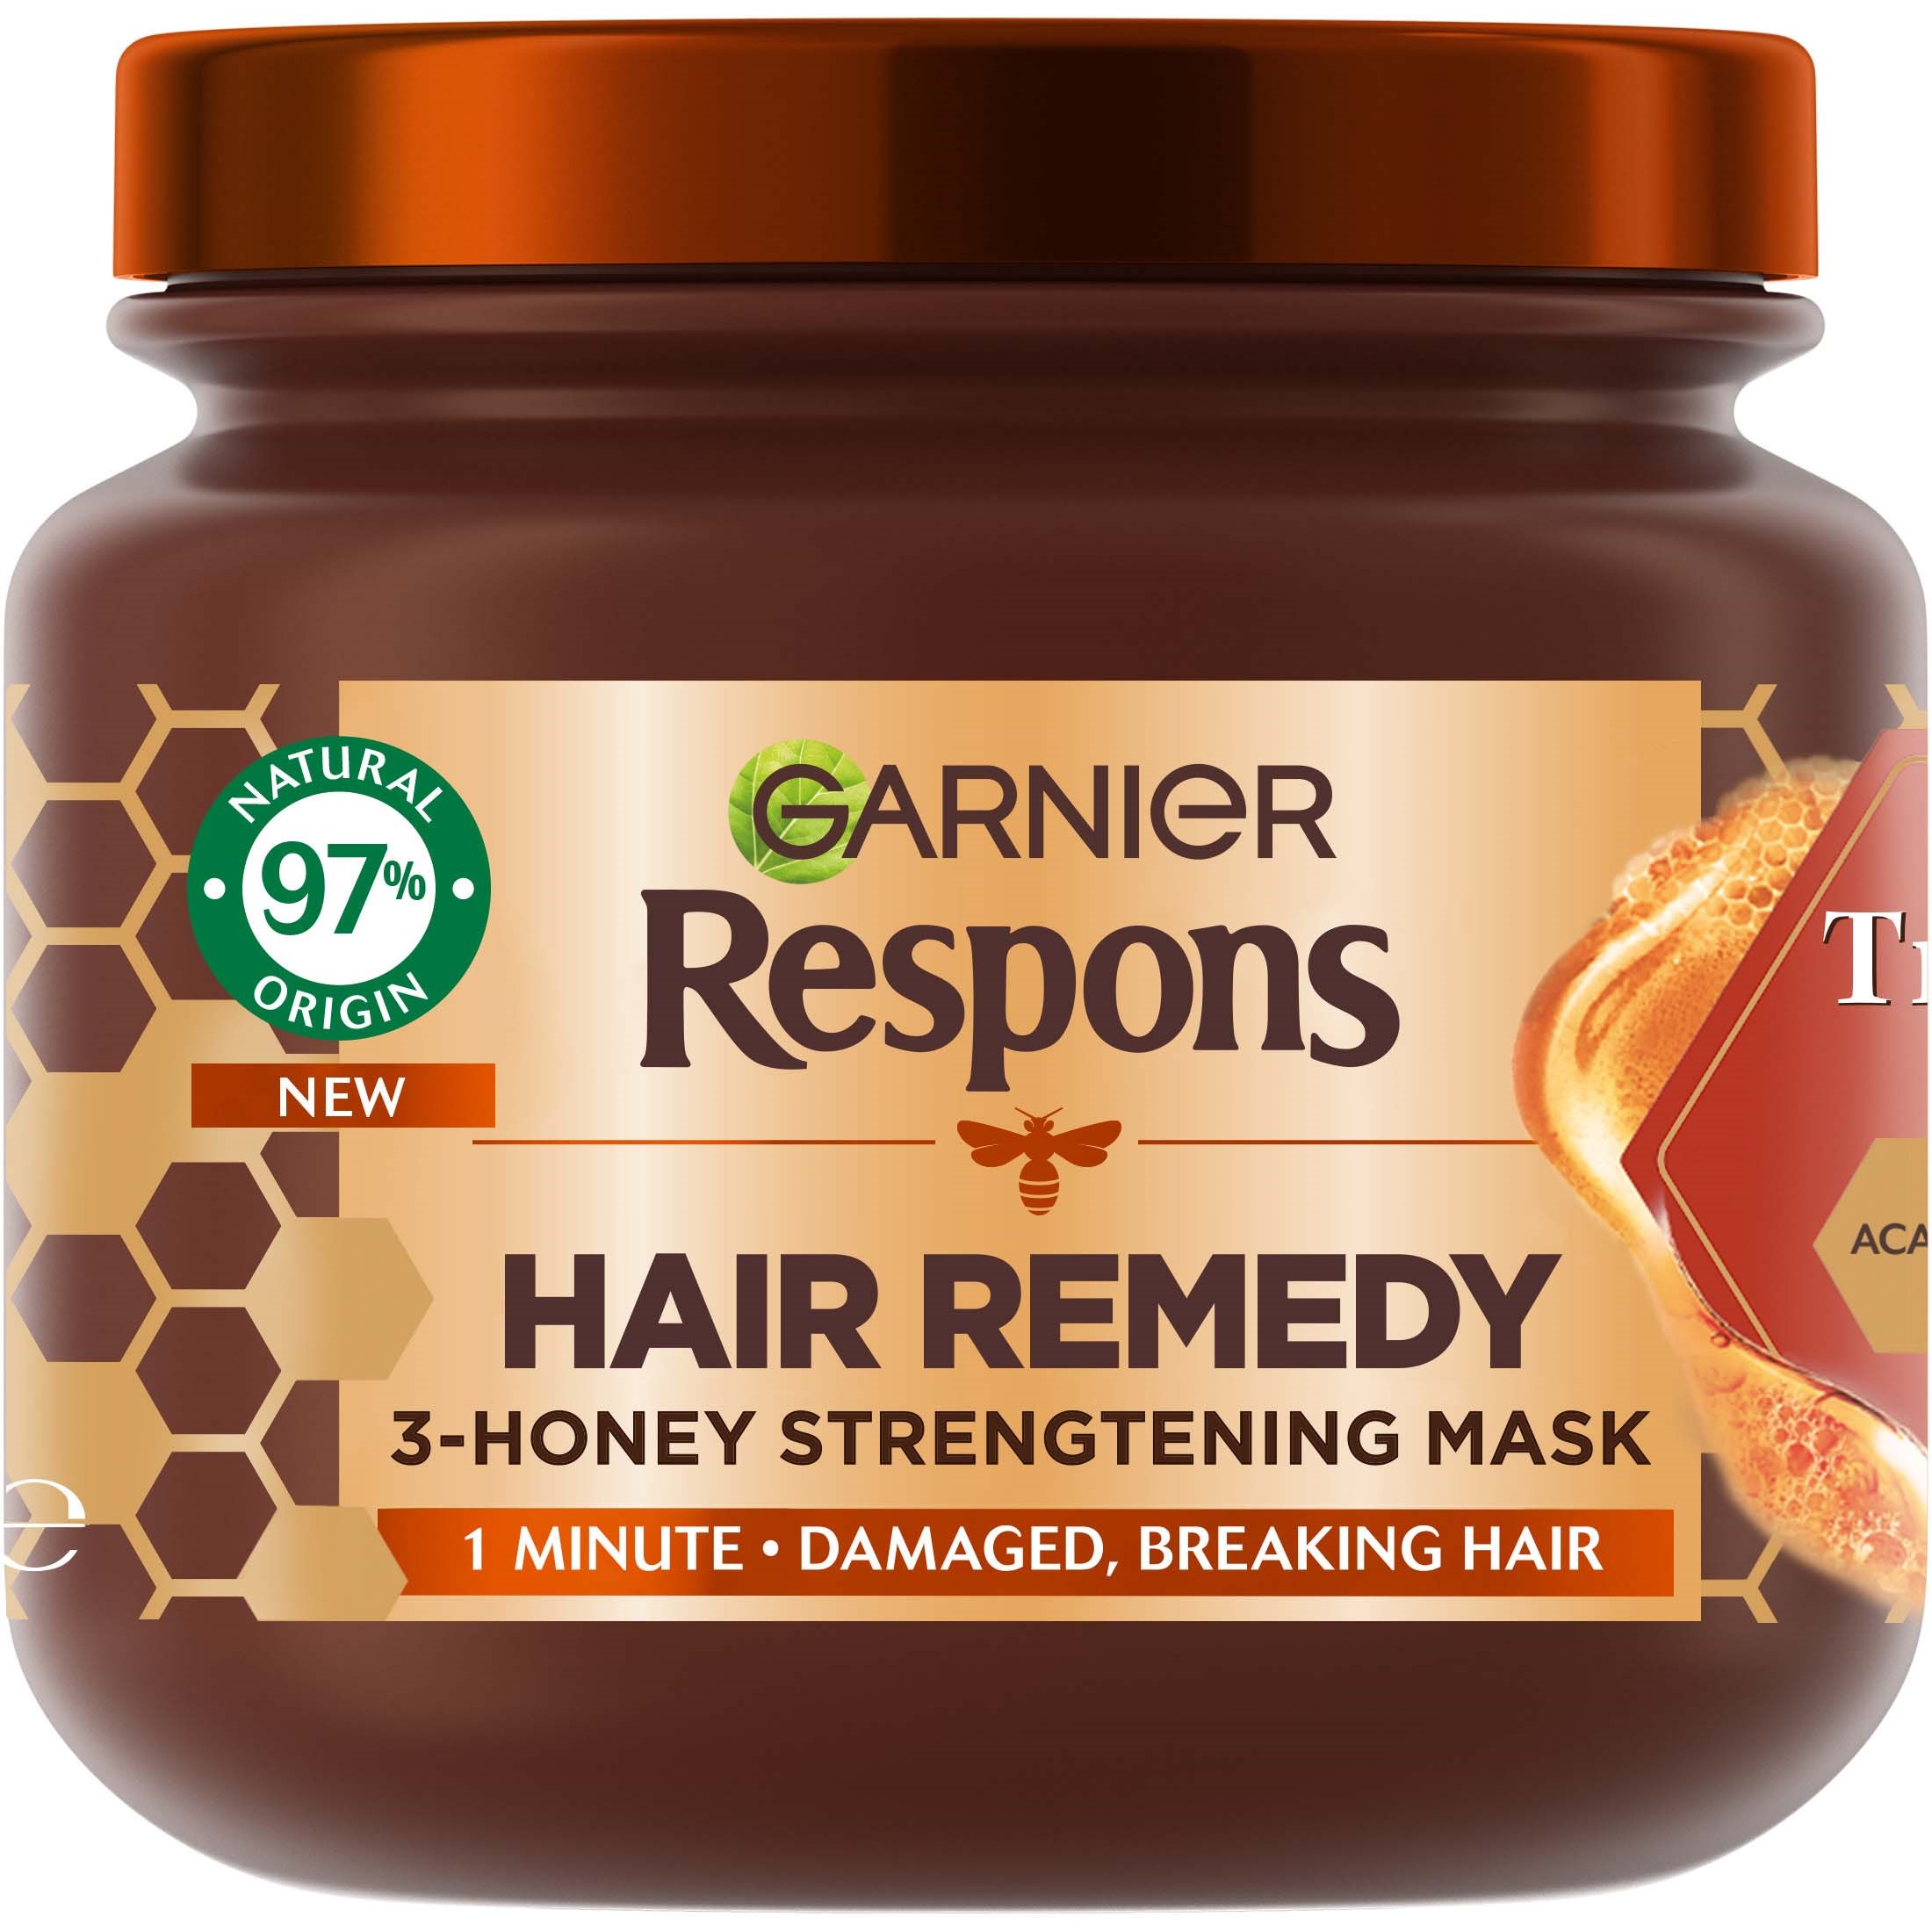 Läs mer om Garnier Respons Hair Remedy 3-Honey Strengtening Mask